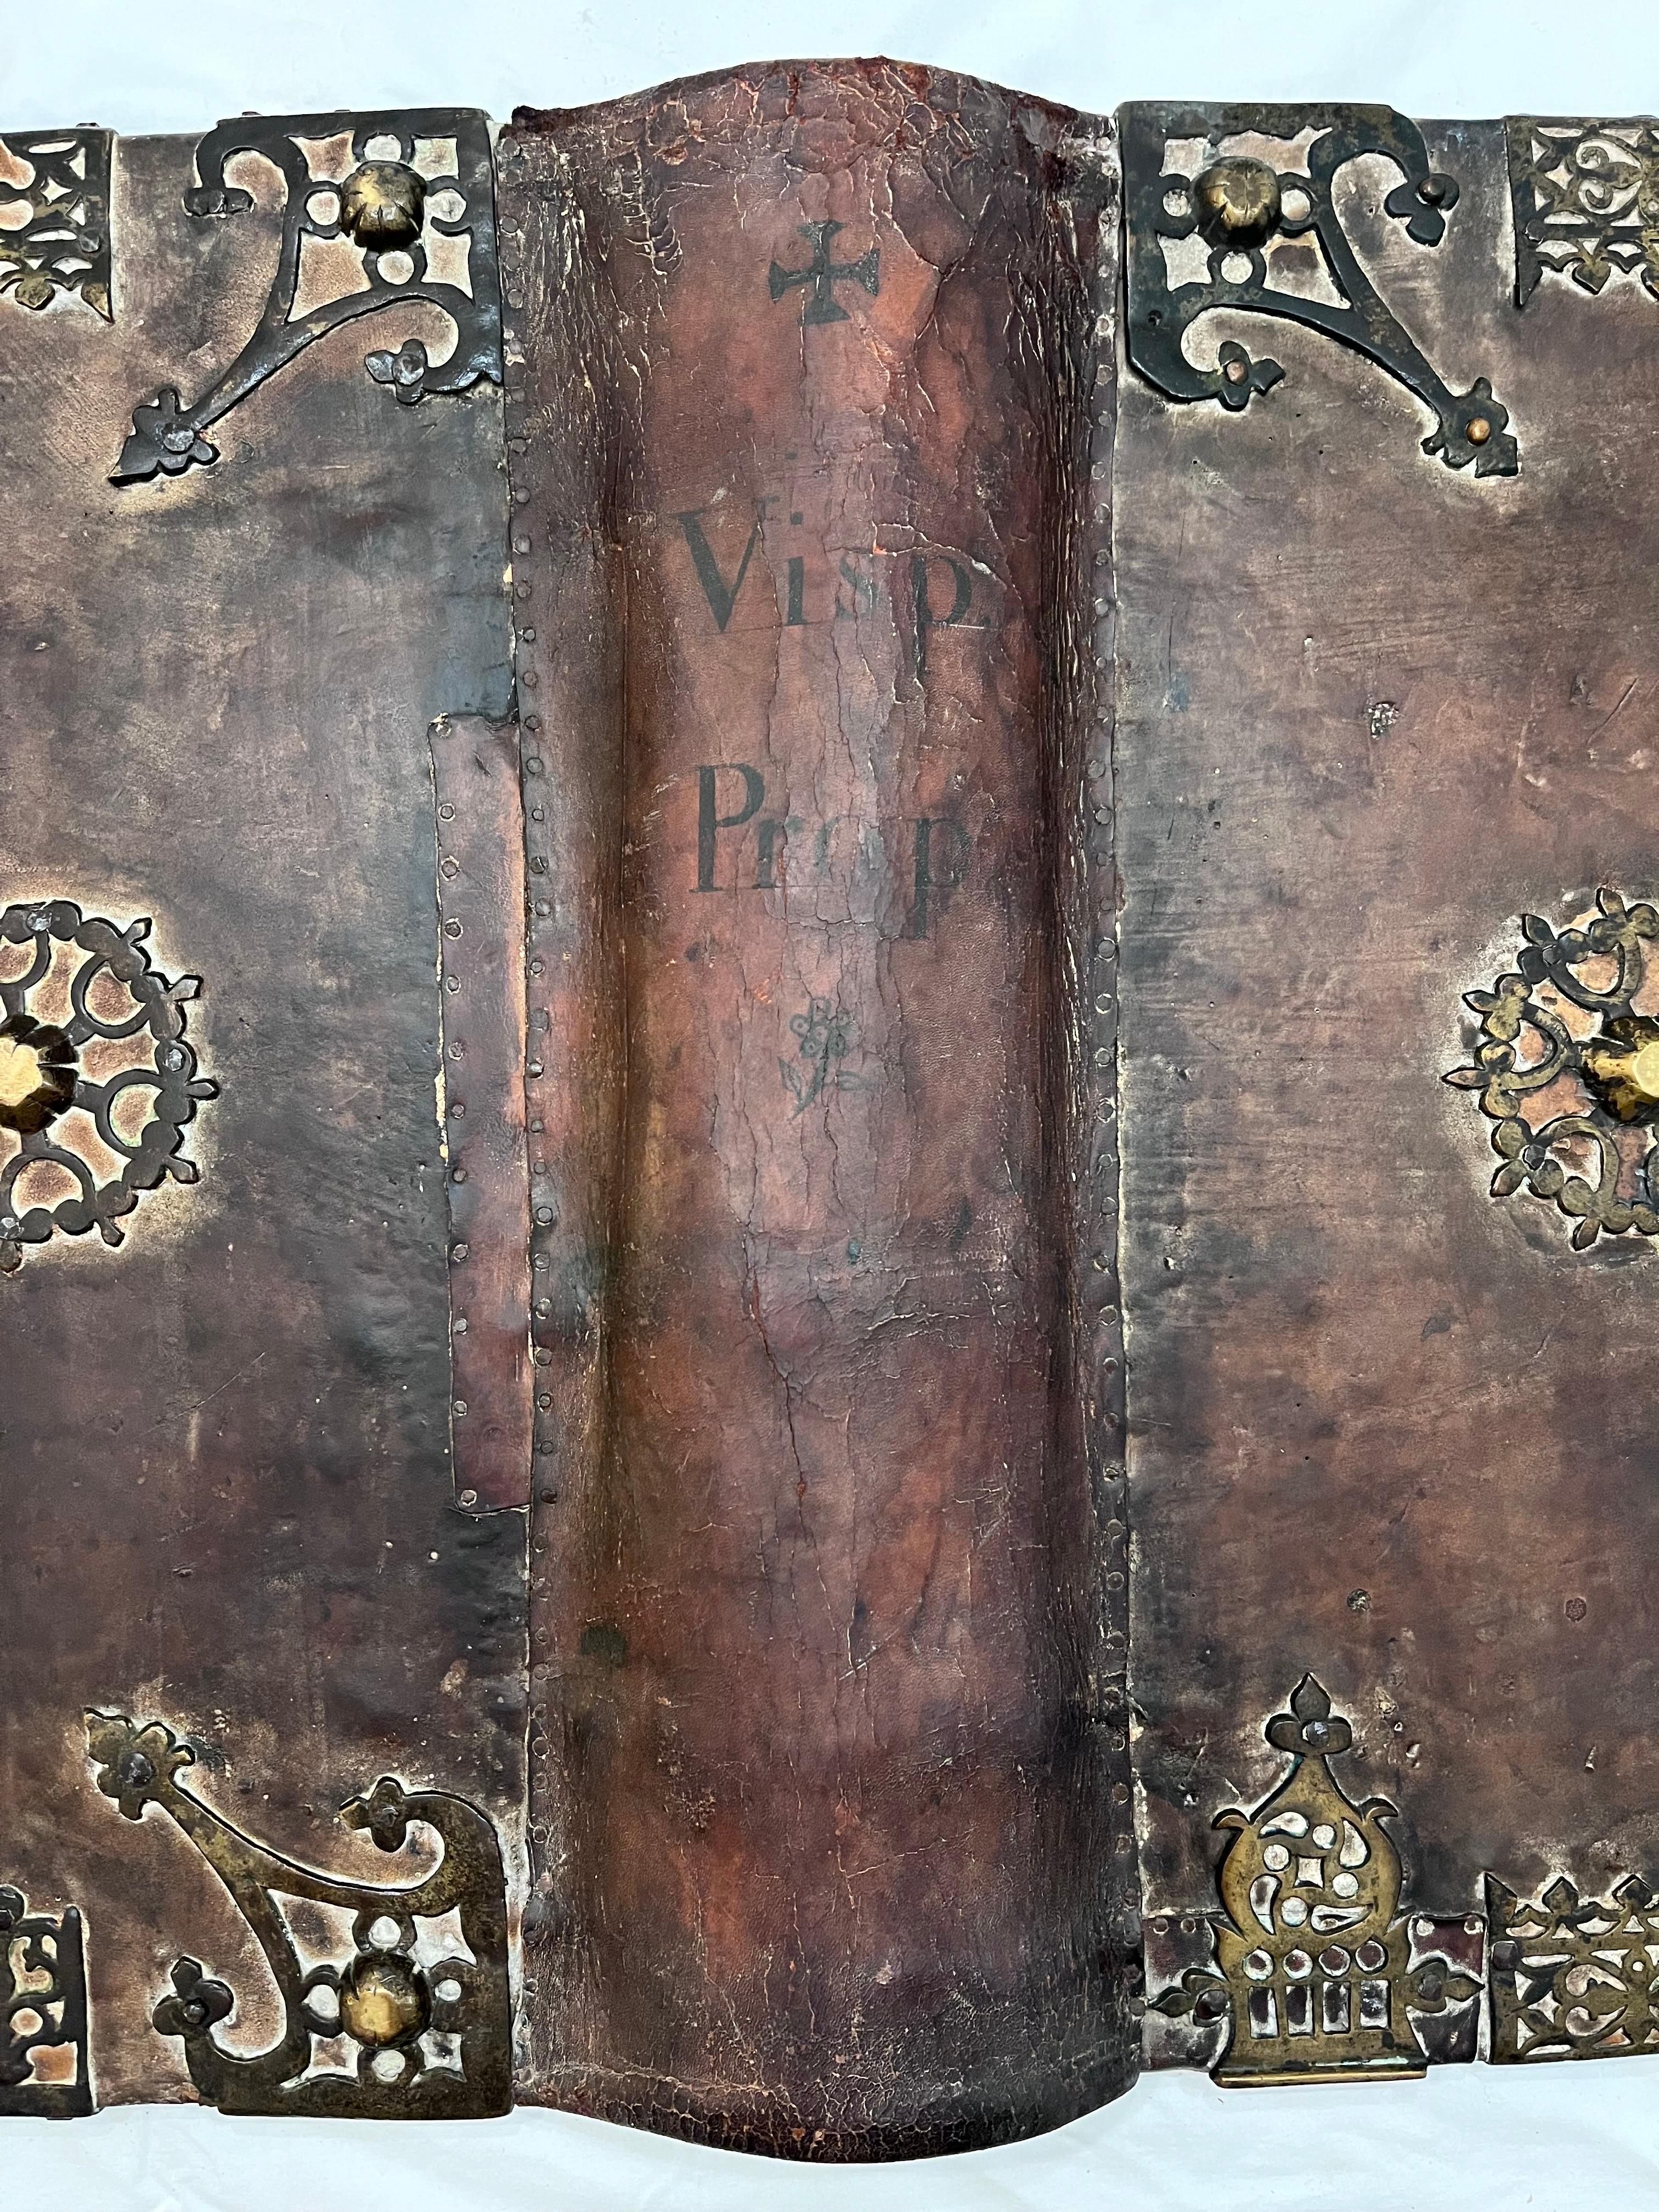 Ein antiker Bucheinband aus Tierhaut oder Vellum mit Messing- oder möglicherweise Bronzebeschlägen (manchmal auch Möbelstücke genannt) von monumentalem Ausmaß. Das Werk misst fast einen Meter in der Höhe! Eine Seite ist noch vorhanden, die